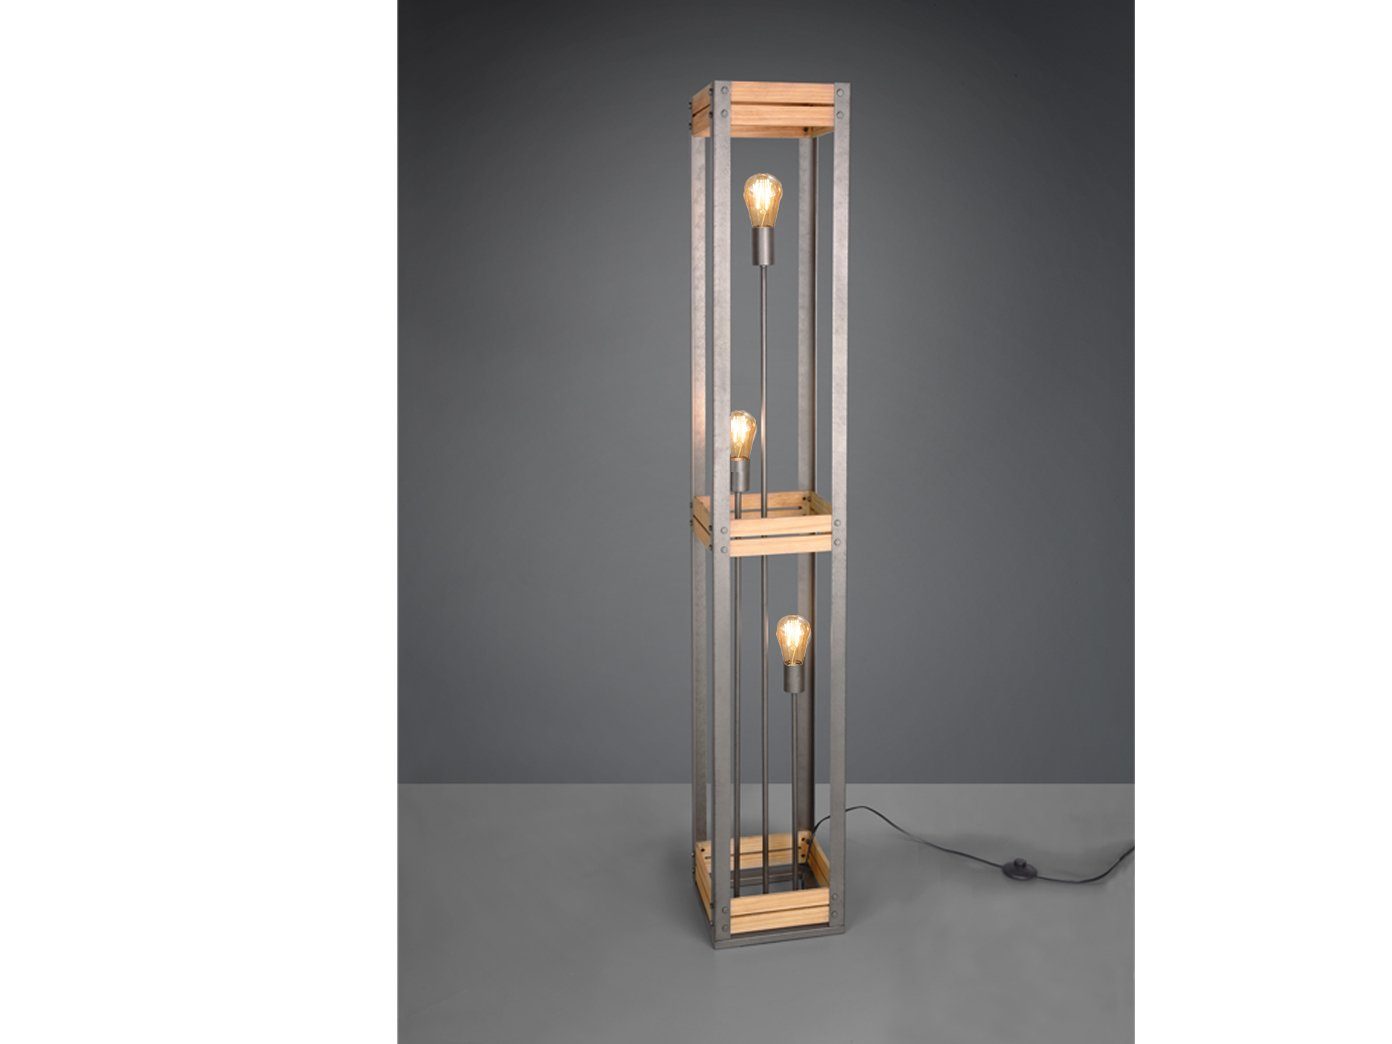 meineWunschleuchte LED Stehlampe, LED wechselbar, Warmweiß, ausgefallene Lampe Holz-balken Vintage Industrial Design, Höhe 153cm